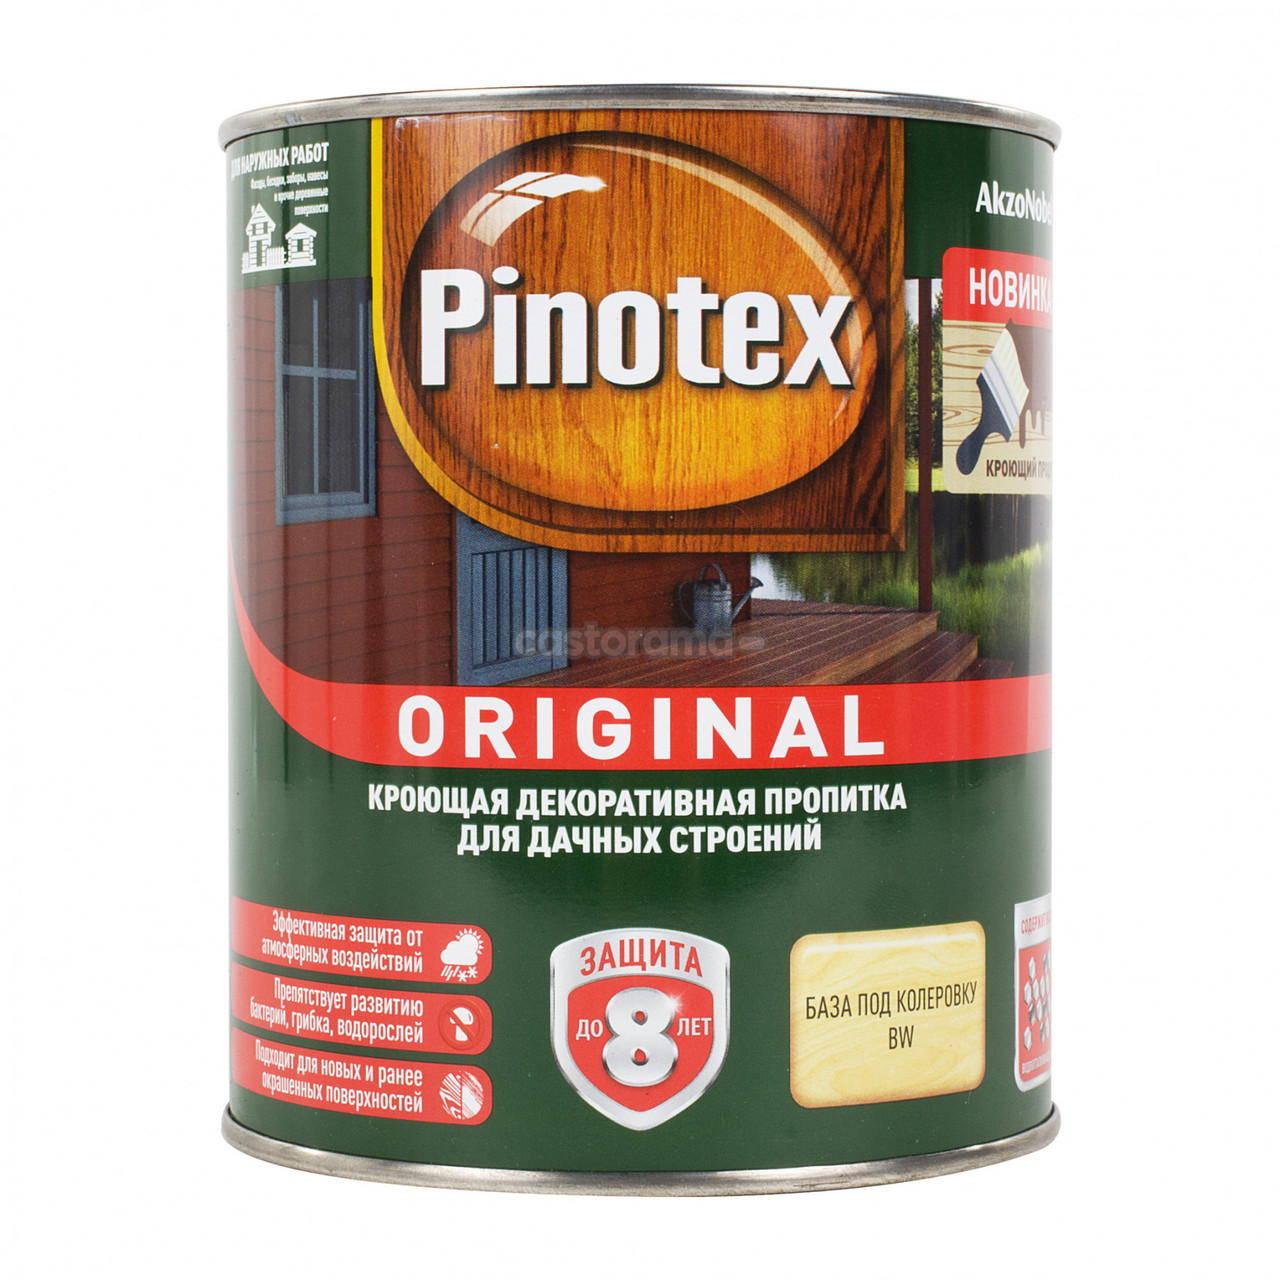 Пропитка Pinotex Original кроющая для деревянных поверхностей BW, 9